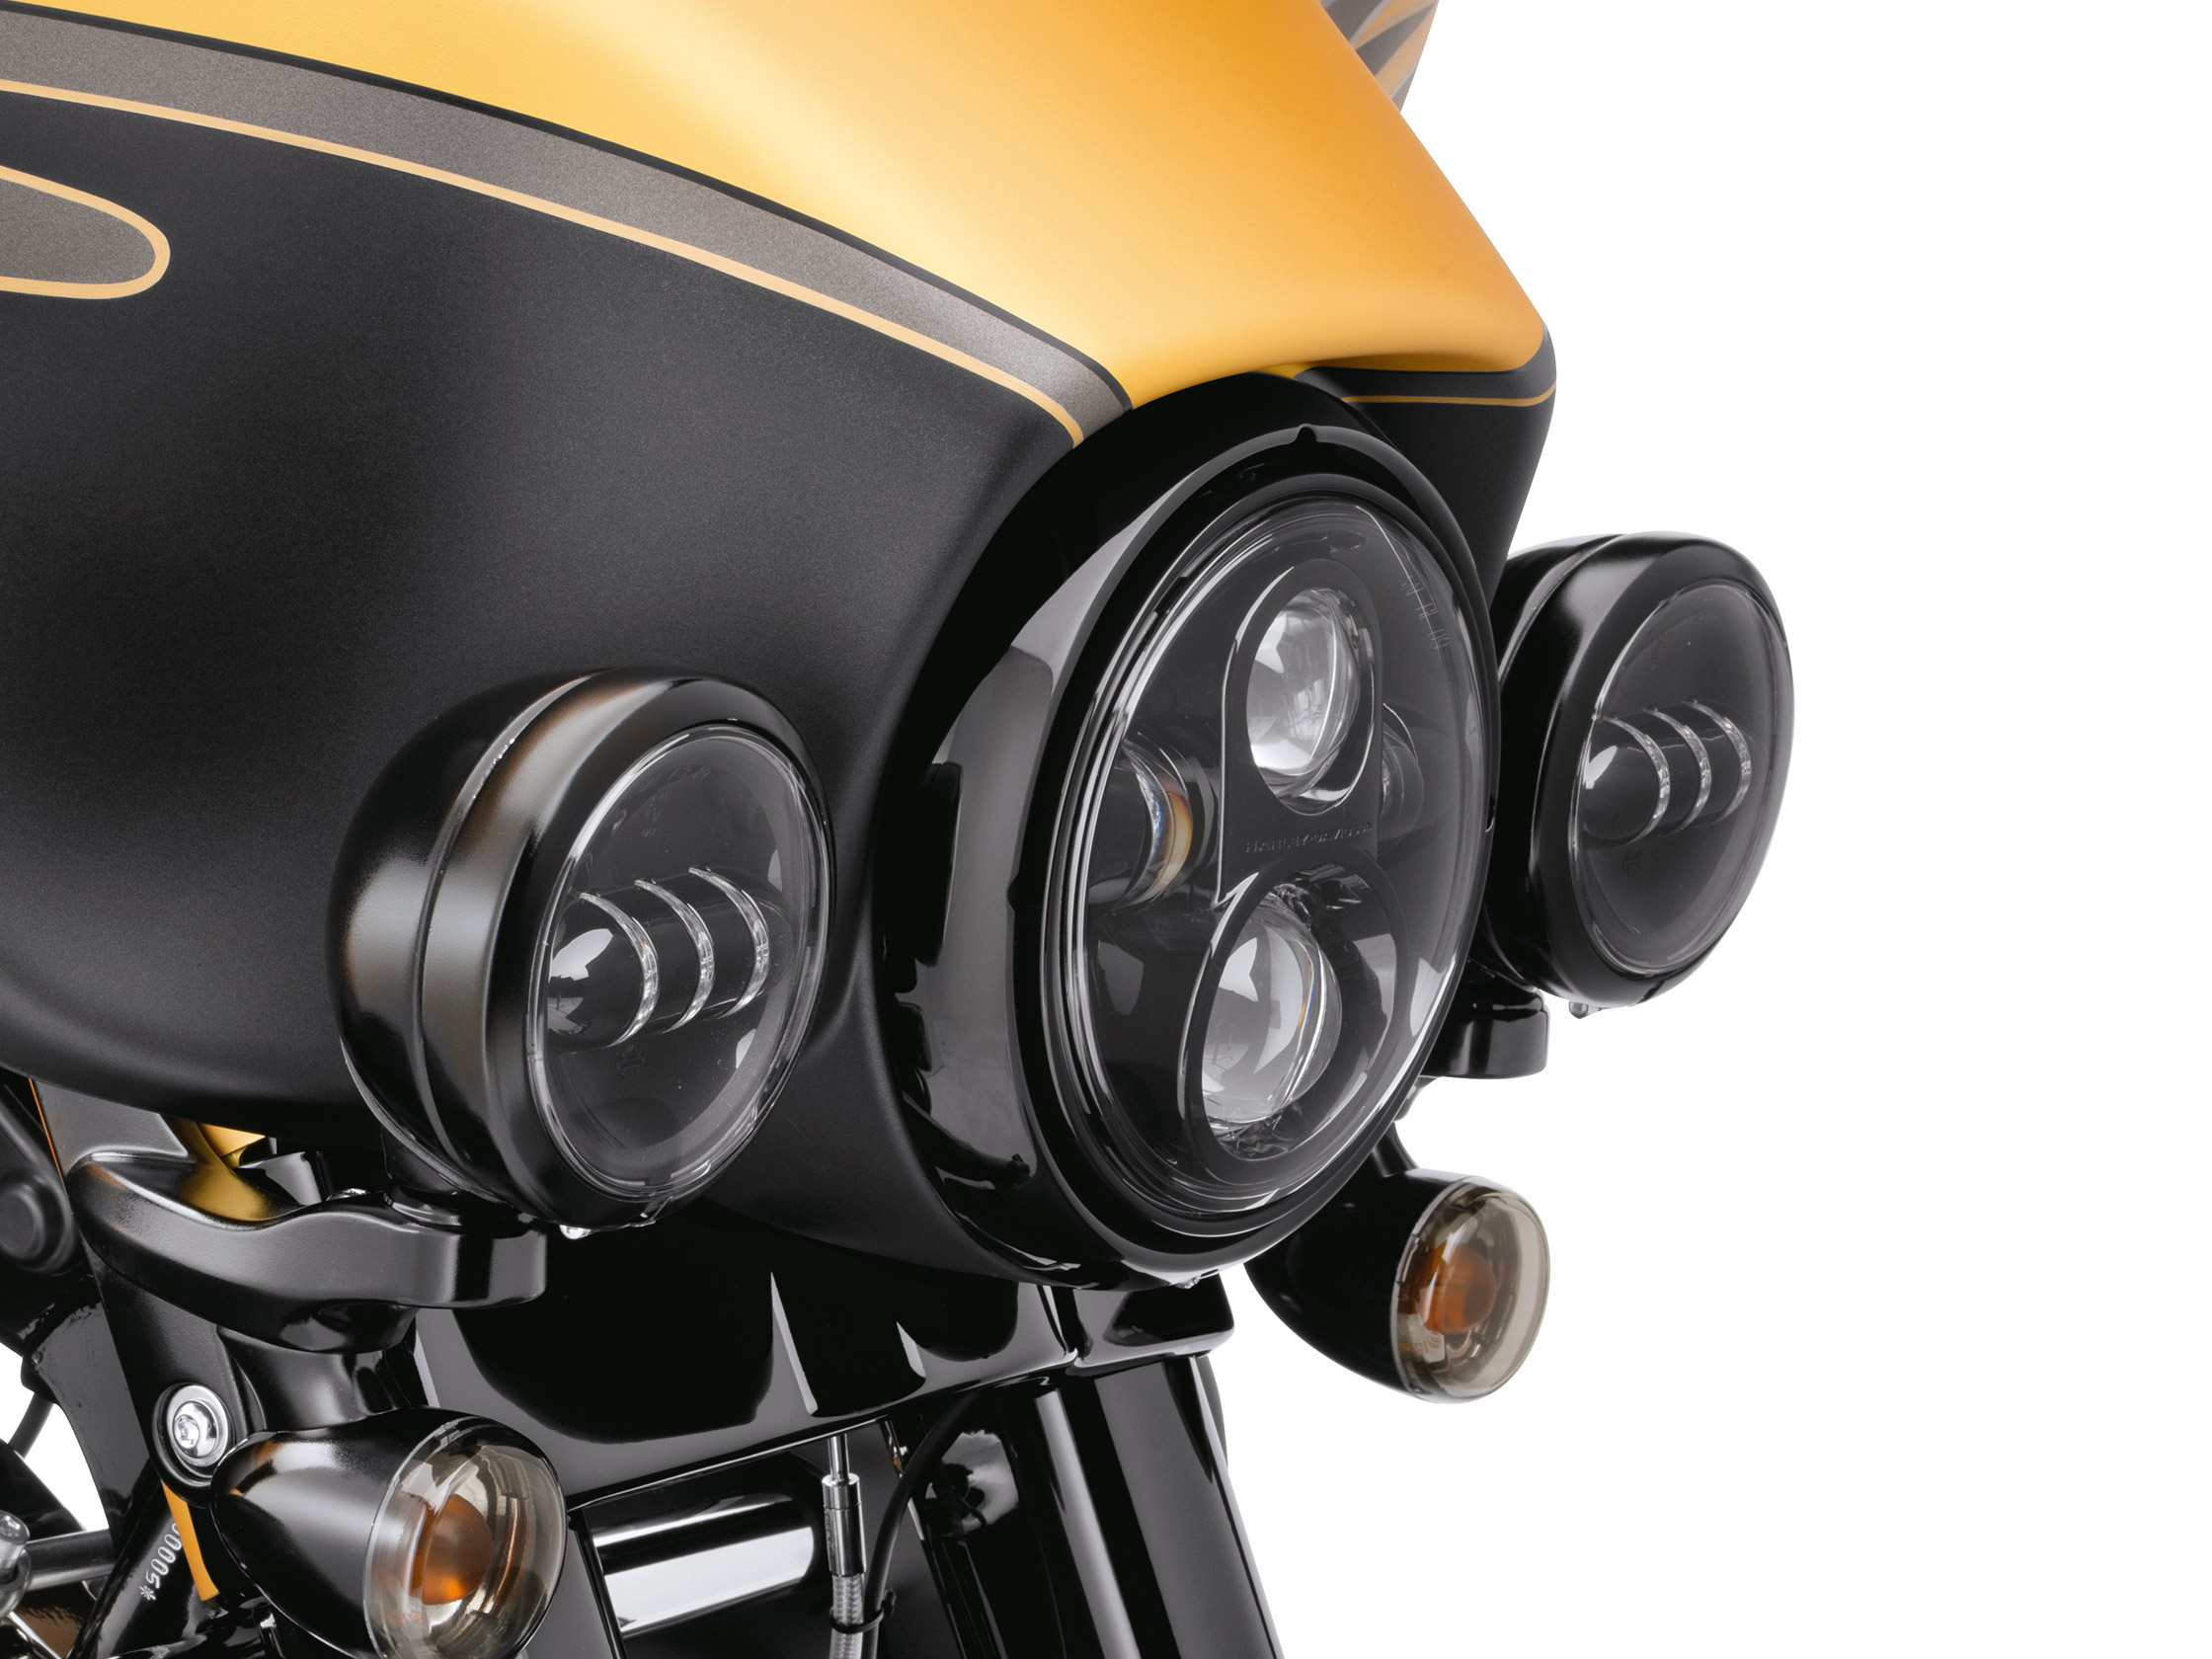 DEFIANCE KOLLEKTION - SCHEINWERFER-ZIERRING 4 Zusatzscheinwerfer - Schwarz  maschinell bearbeitet. 61400355 / Fahrwerkverzierungen / Softail m8 / Teile  & Zubehör / - House-of-Flames Harley-Davidson